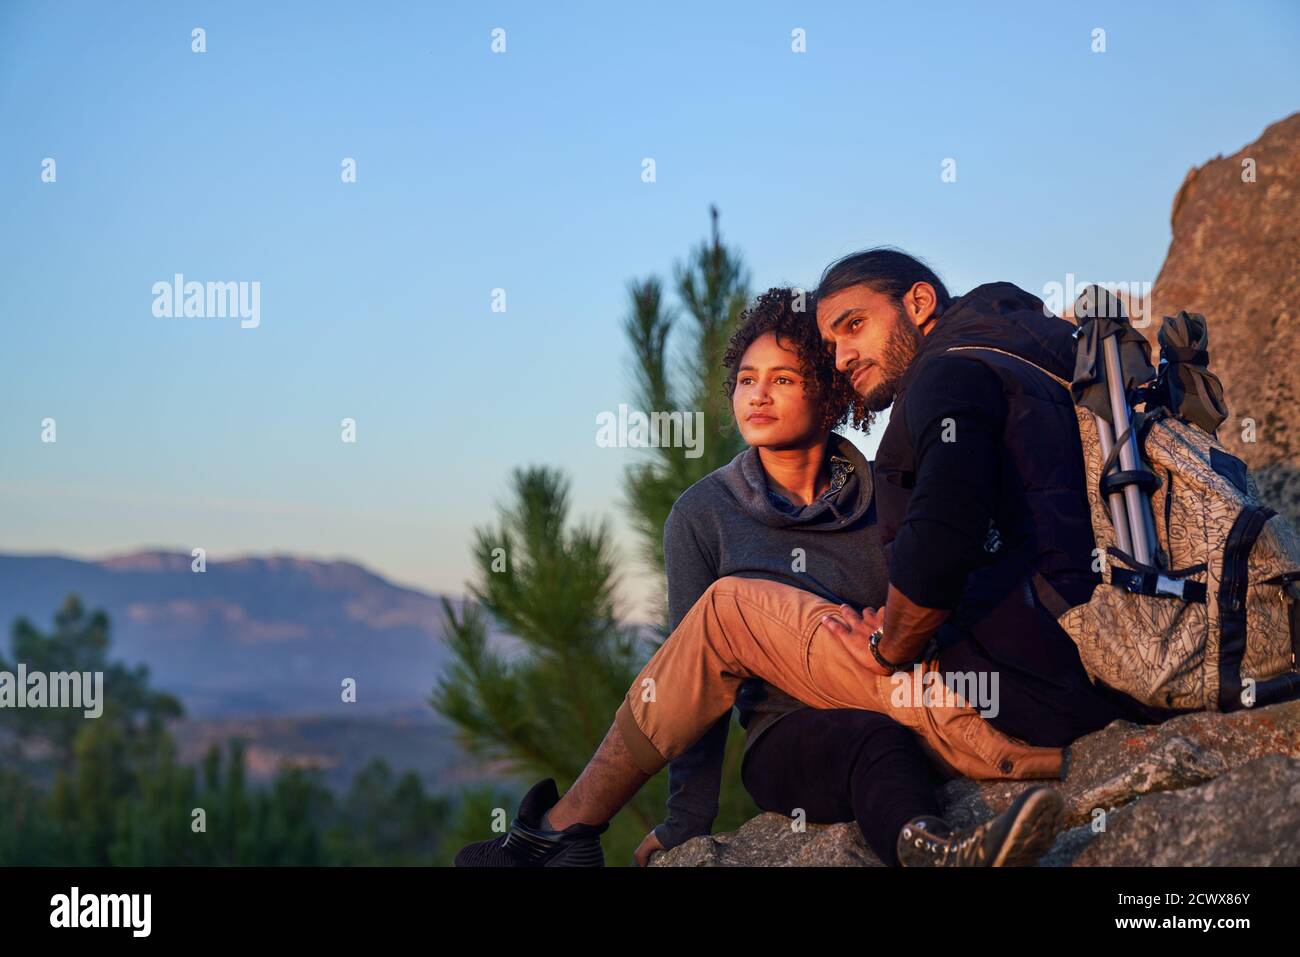 Serene young hiking couple enjoying sunset on rocks Stock Photo